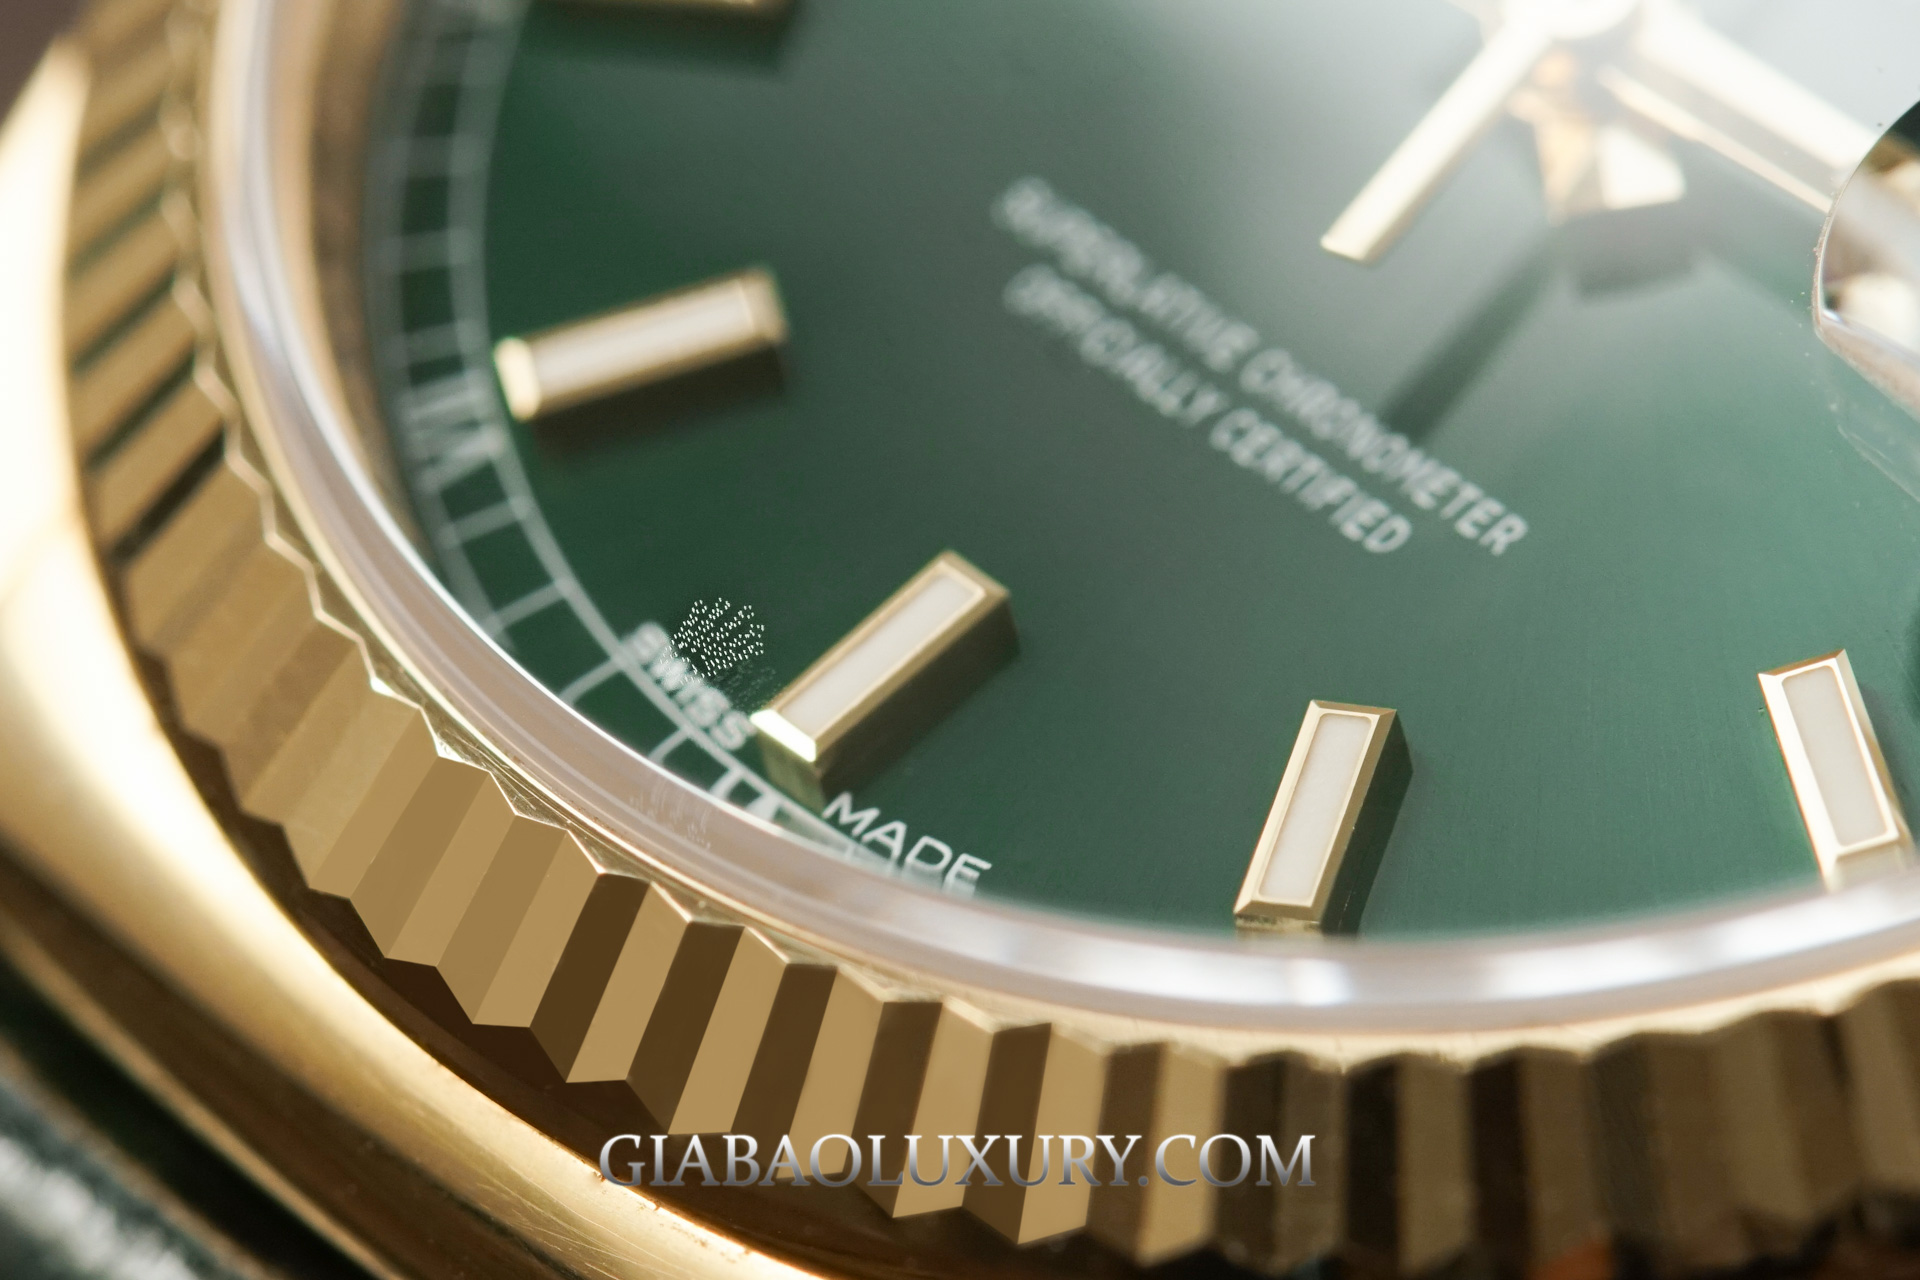 Đồng hồ Rolex Day-Date 36 118138 mặt xanh lá